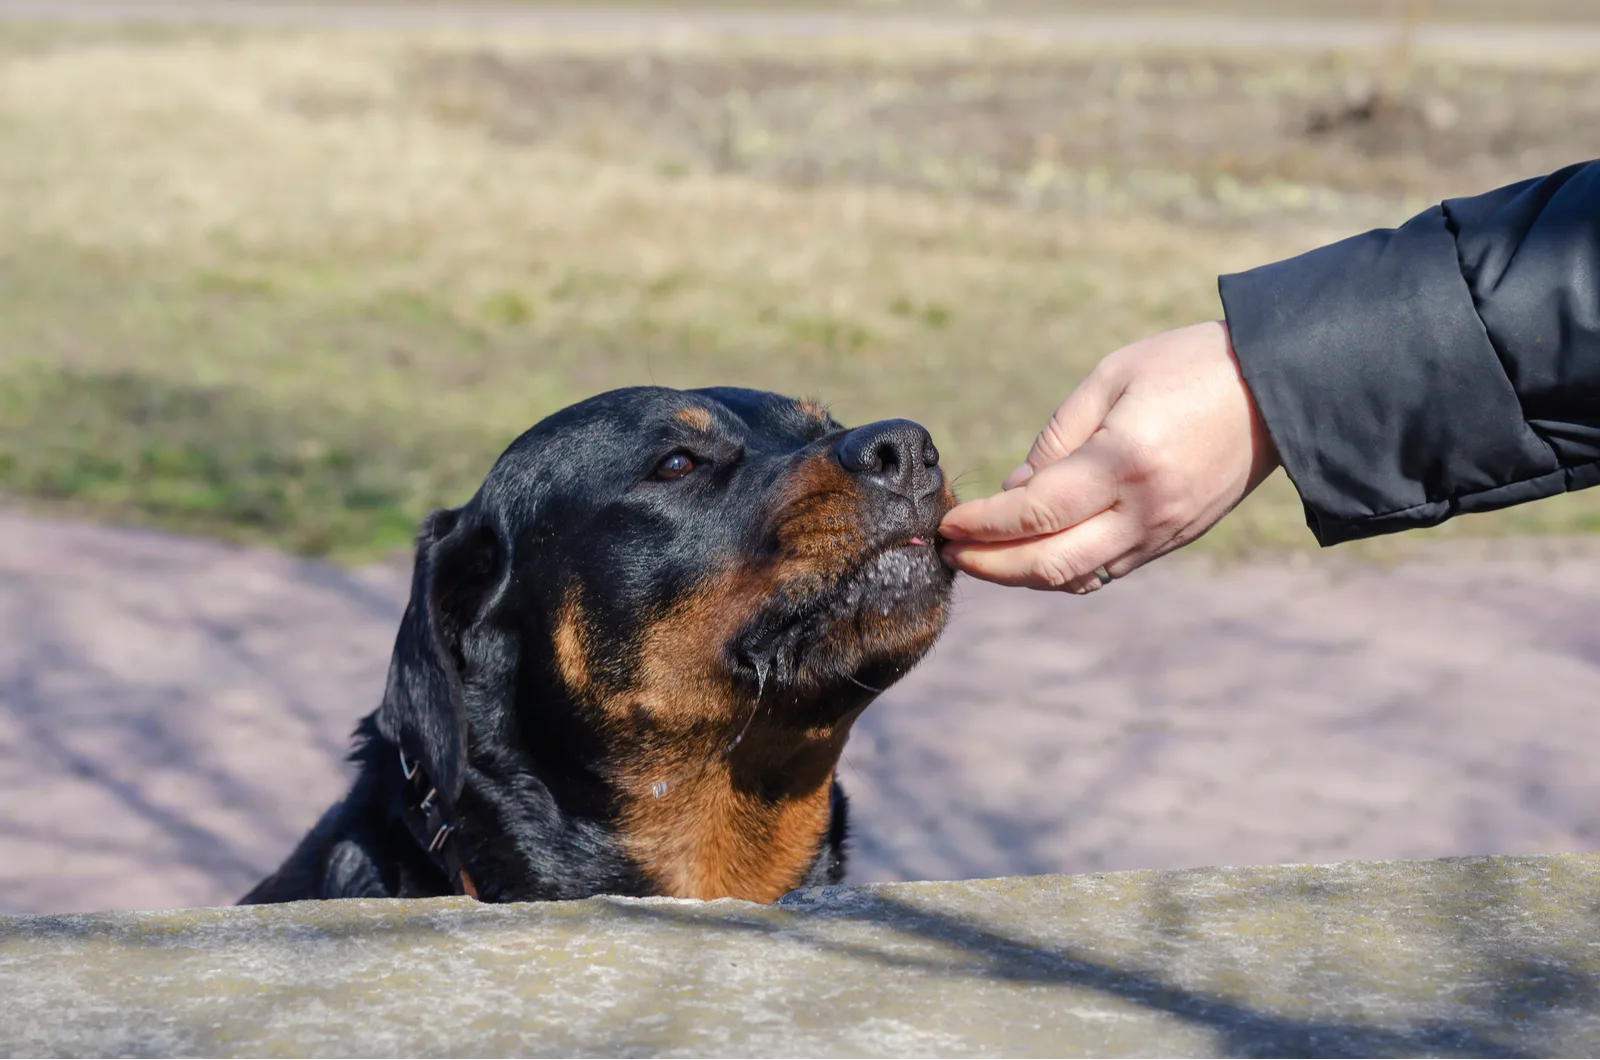 A woman treats a Rottweiler